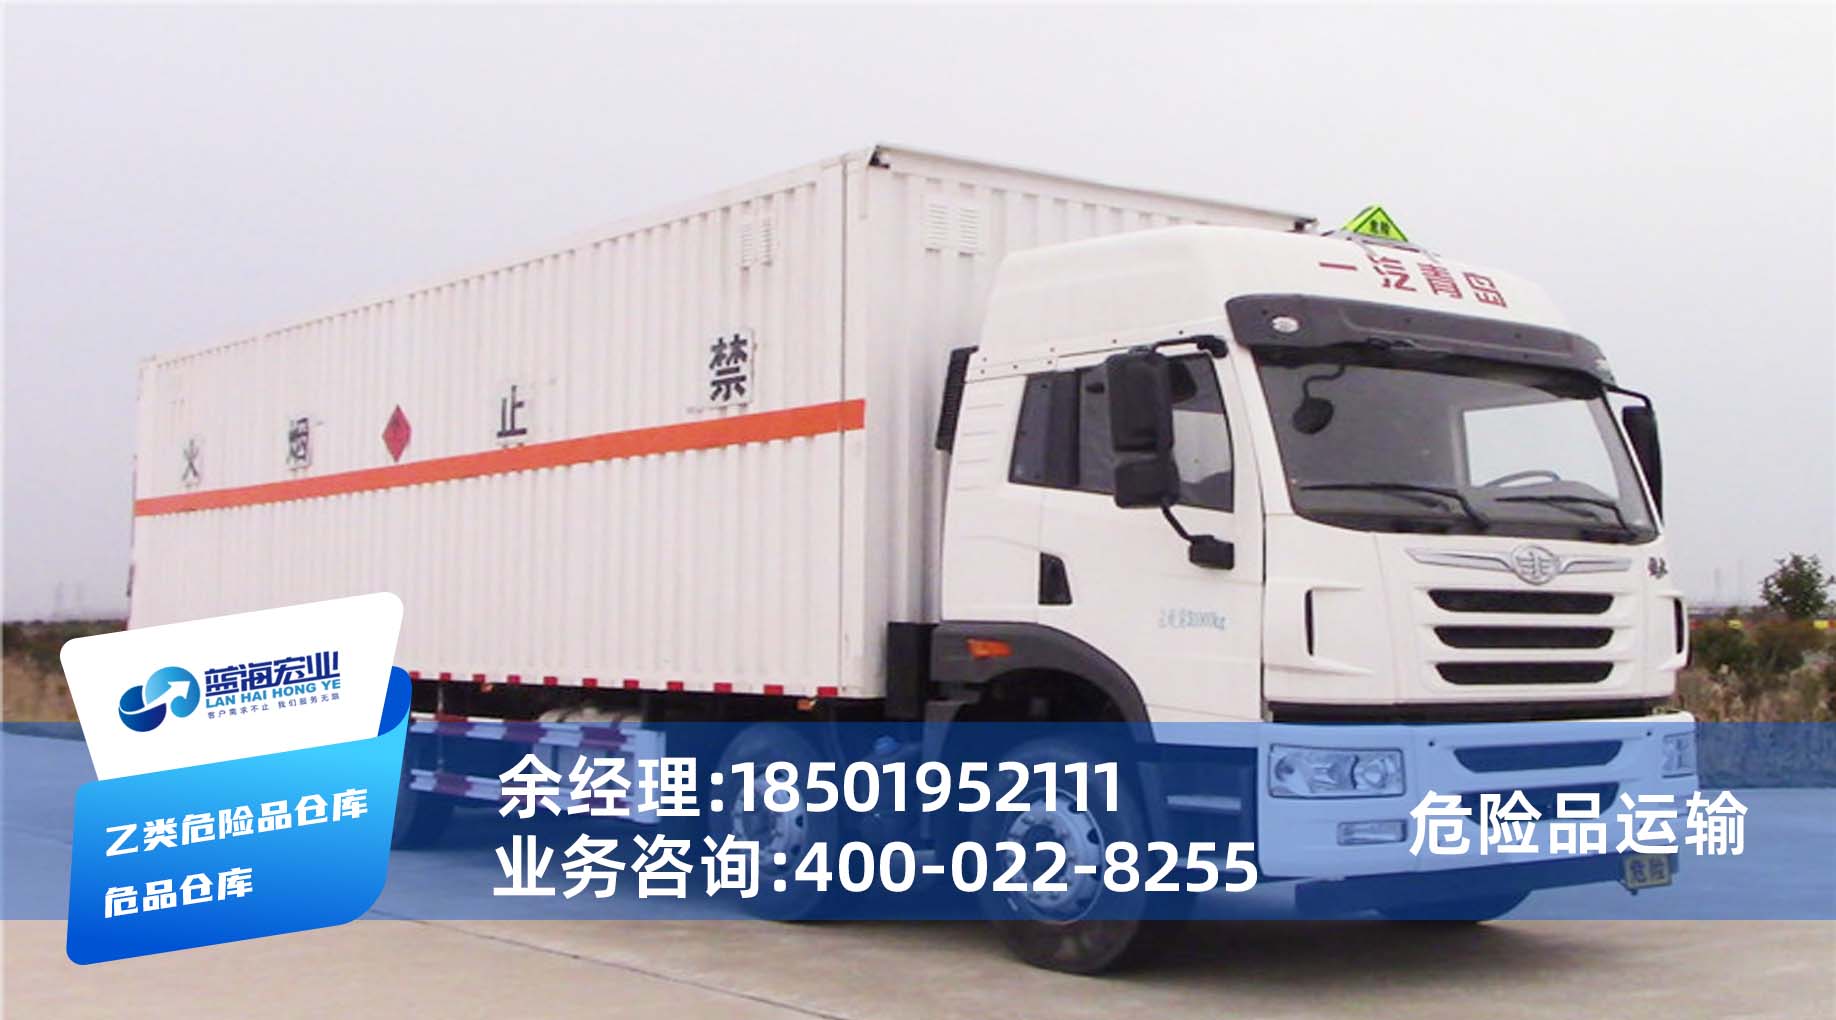 上海危险品运输物流公司